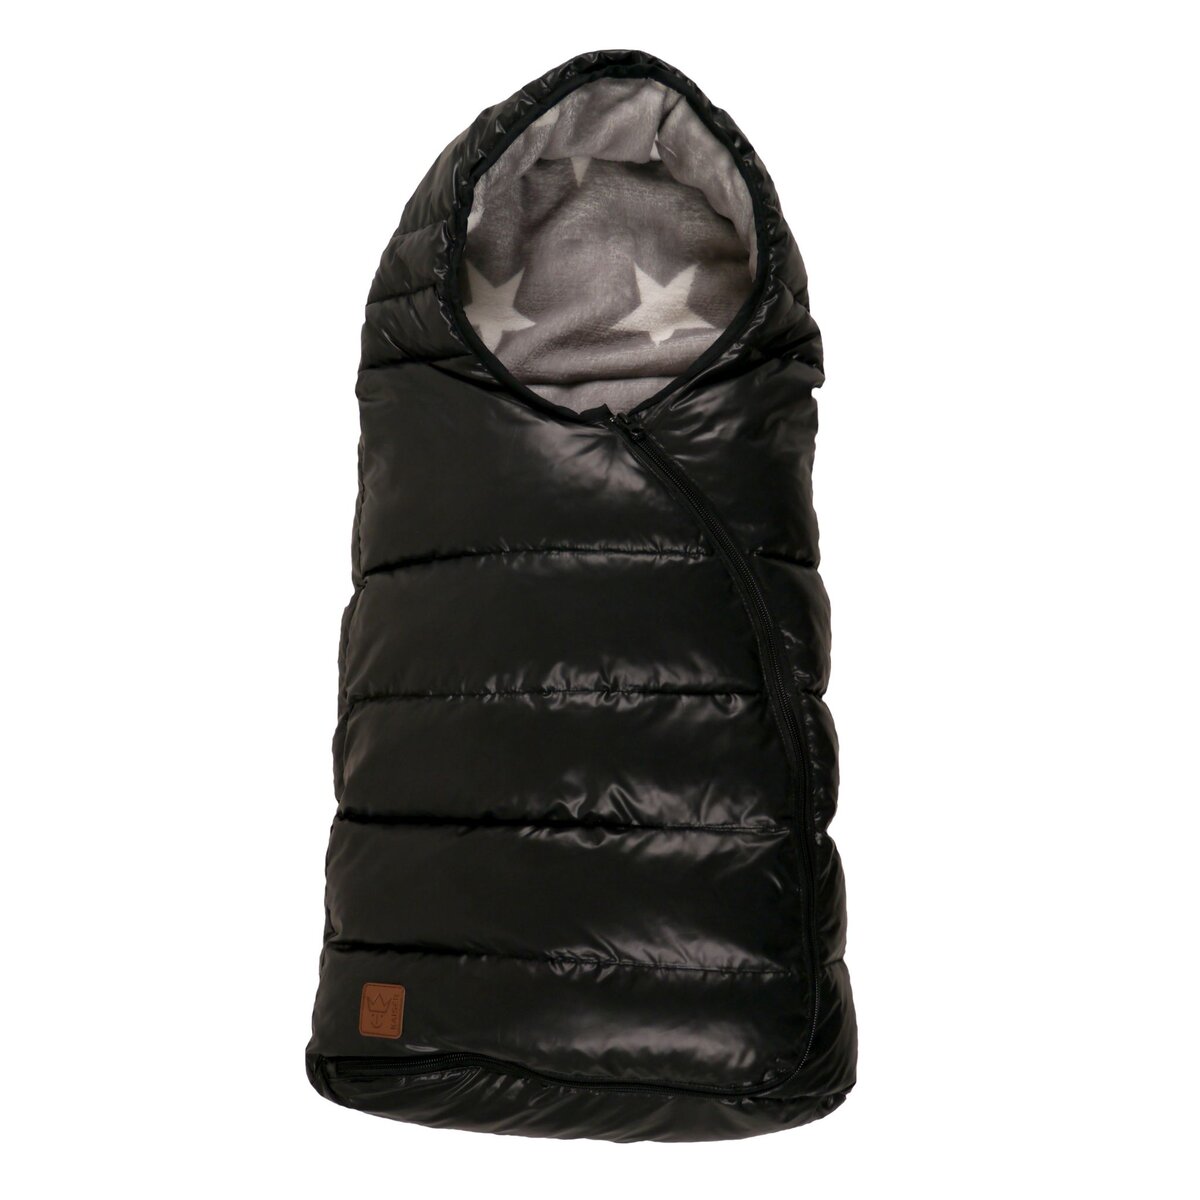 KAISER Chancelière sac de couchage - De 0 à 12 mois - Noir satiné motif étoile